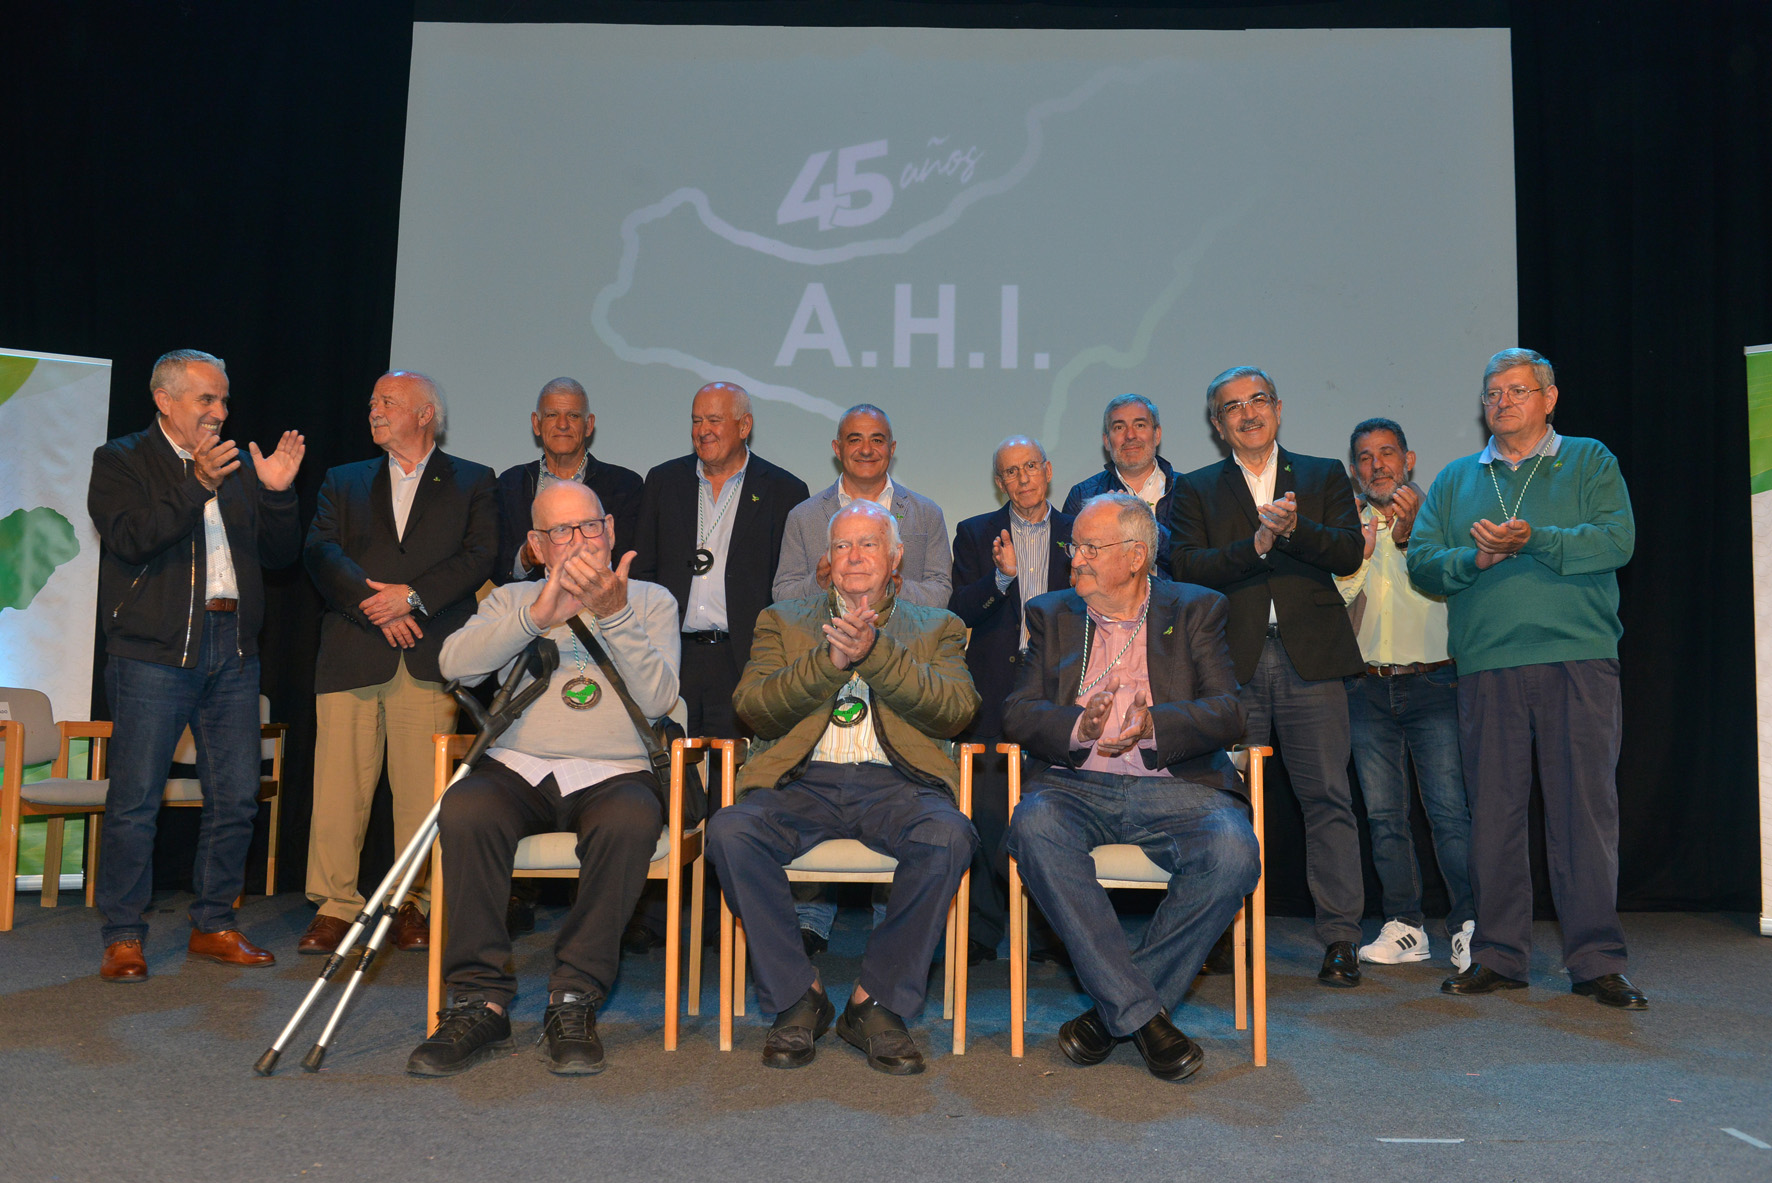 Fundadores, afiliados y simpatizantes celebraron los 45 años de la AHI